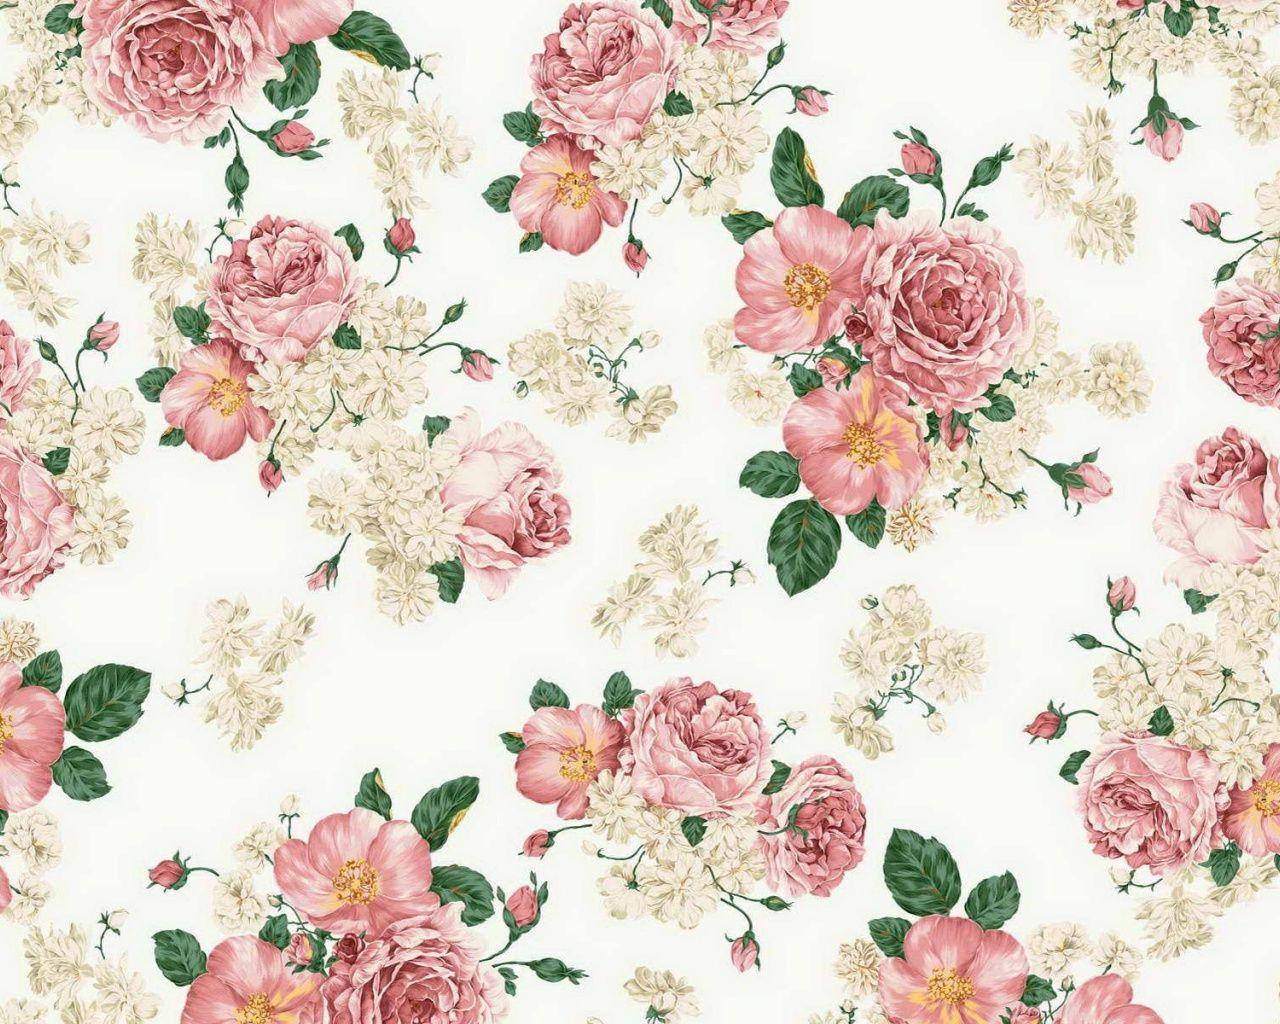 Bạn đang tìm kiếm những hoa cổ điển đẹp để trang trí cho chiếc iPad yêu quý của mình? Những bông hoa tuyệt đẹp sẽ giúp cho thiết bị của bạn trở nên nổi bật hơn bao giờ hết. Hãy xem ngay hình ảnh dưới đây để tìm cho mình bộ hoa cổ điển ưng ý nhất.